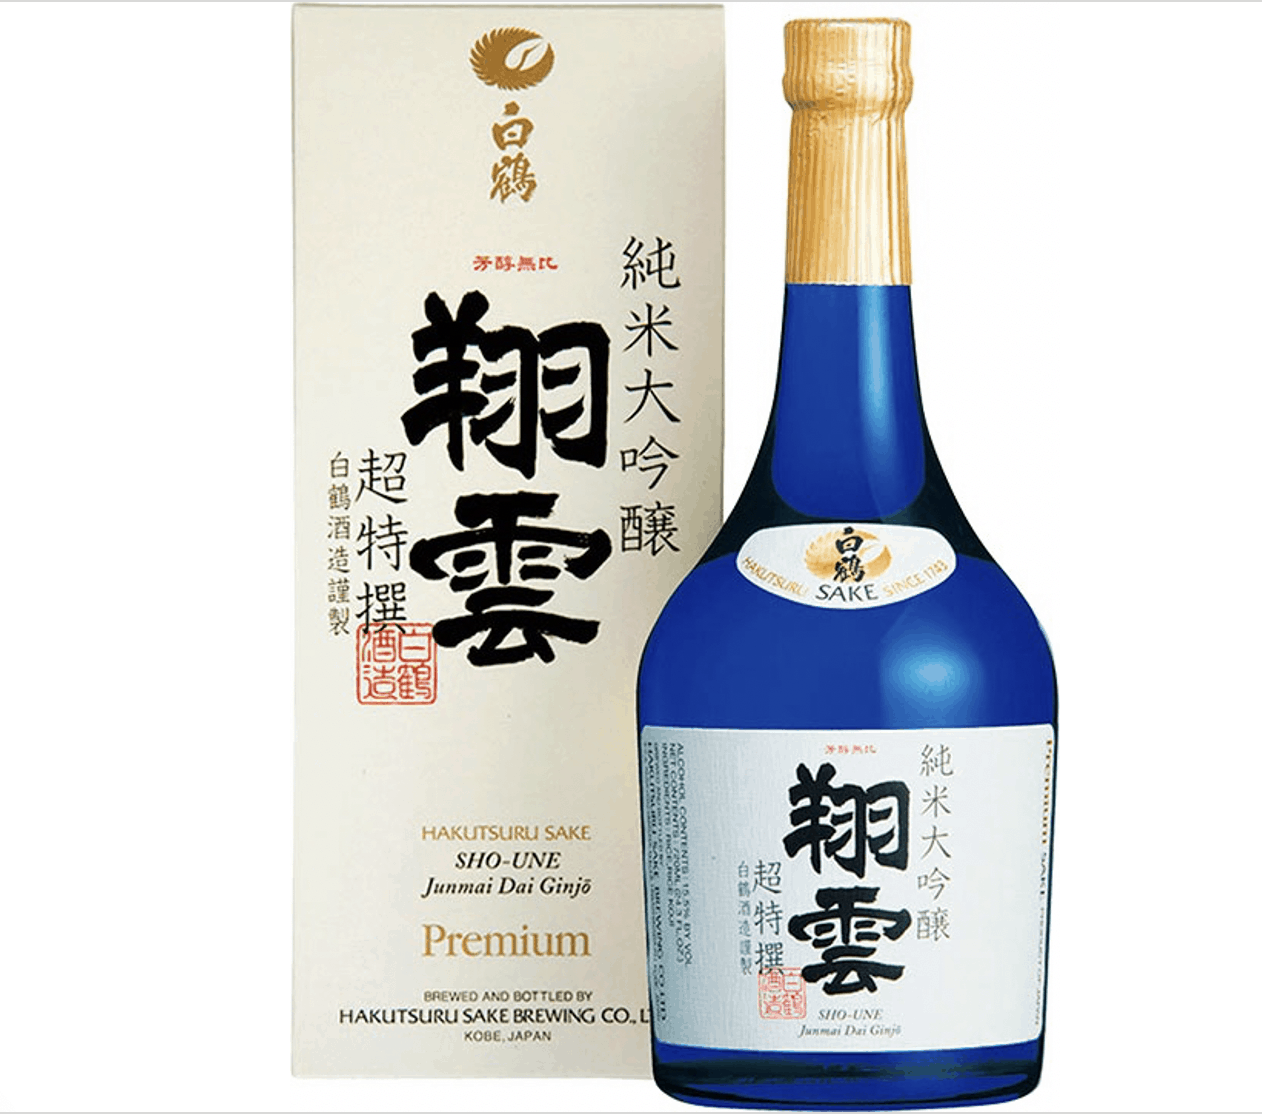 Hakutsuru Premium Sake Junmai Daiginjo “Sho-Une”